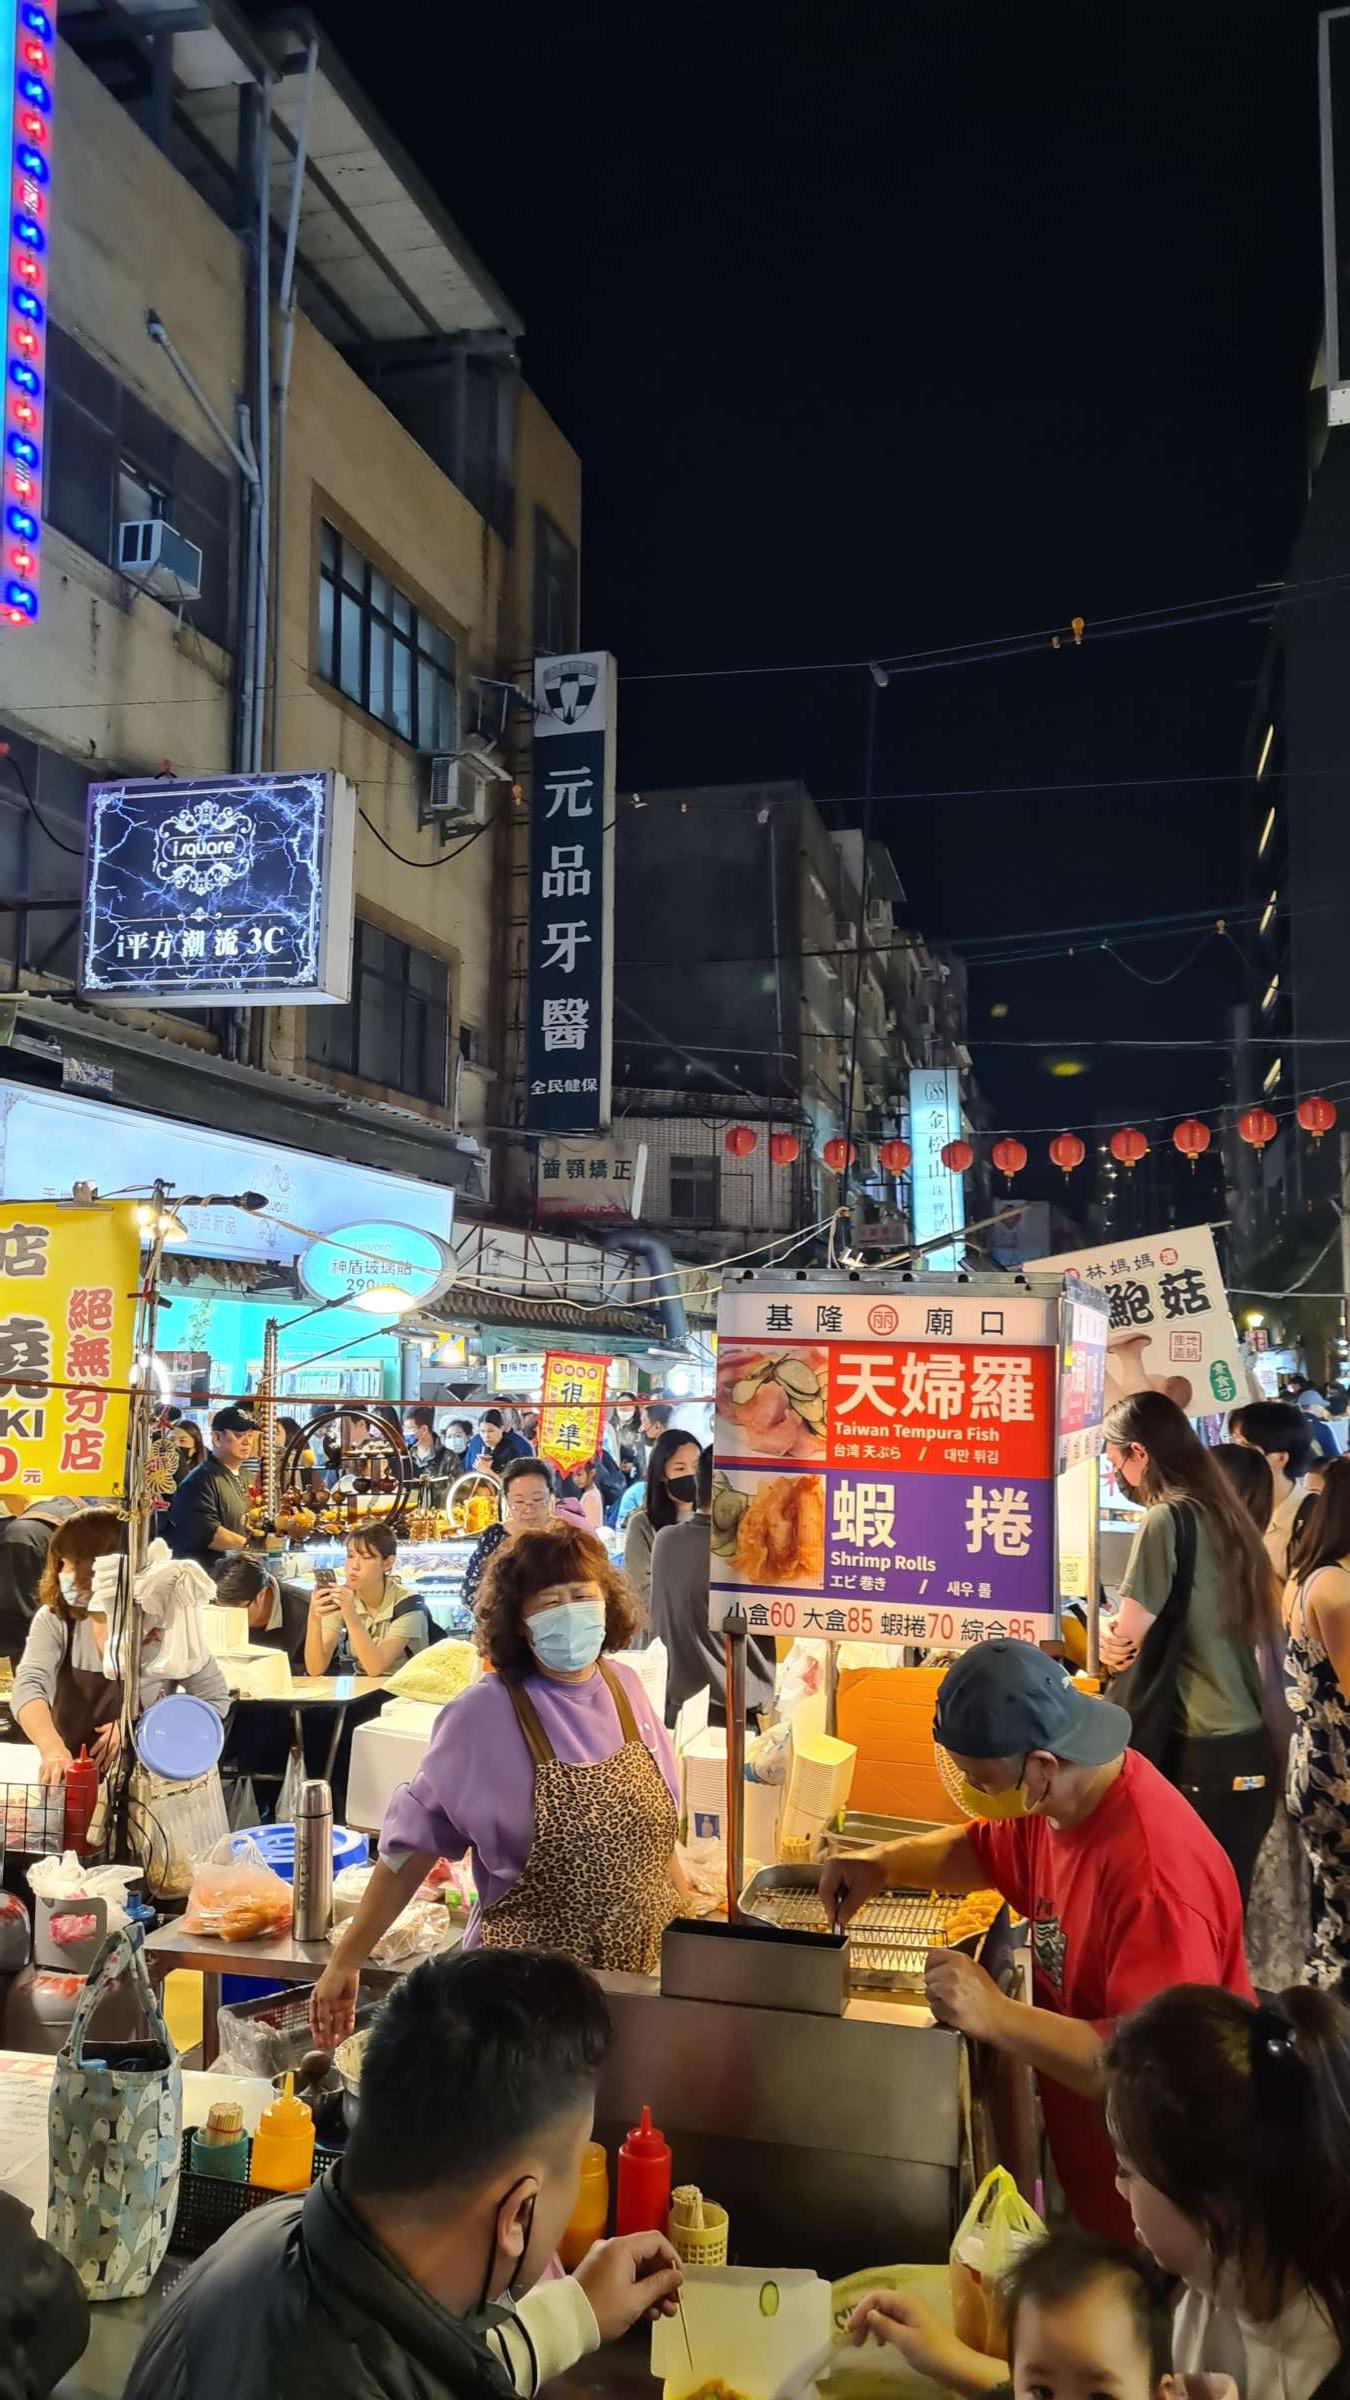 Nightmarket in Taipei